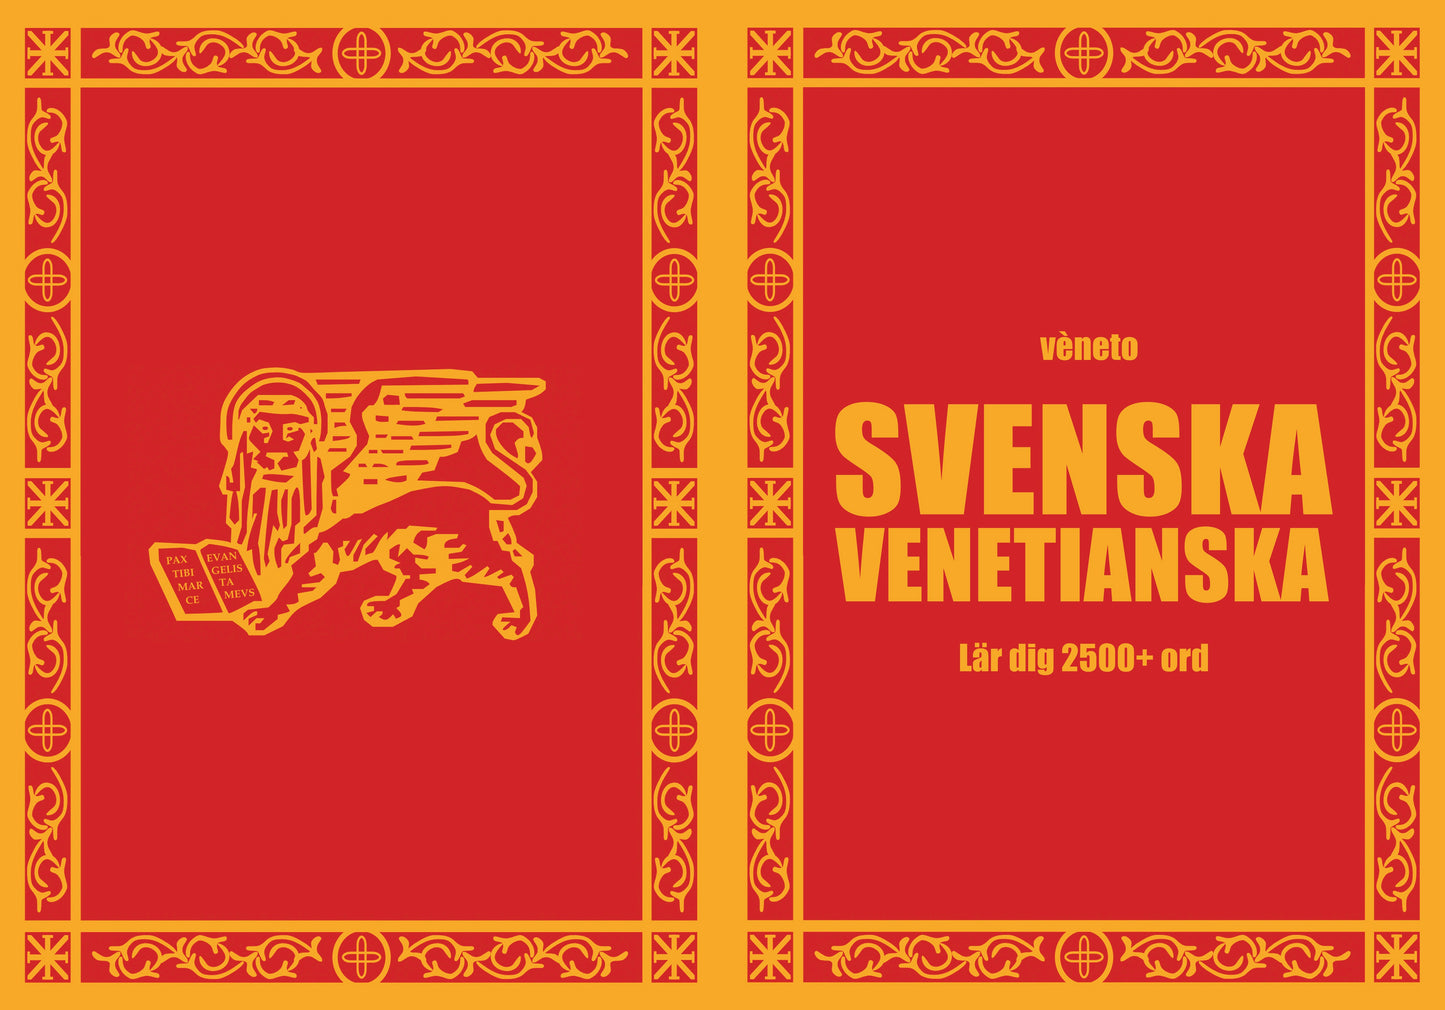 Svenska-venetianska anteckningsbok att fylla i